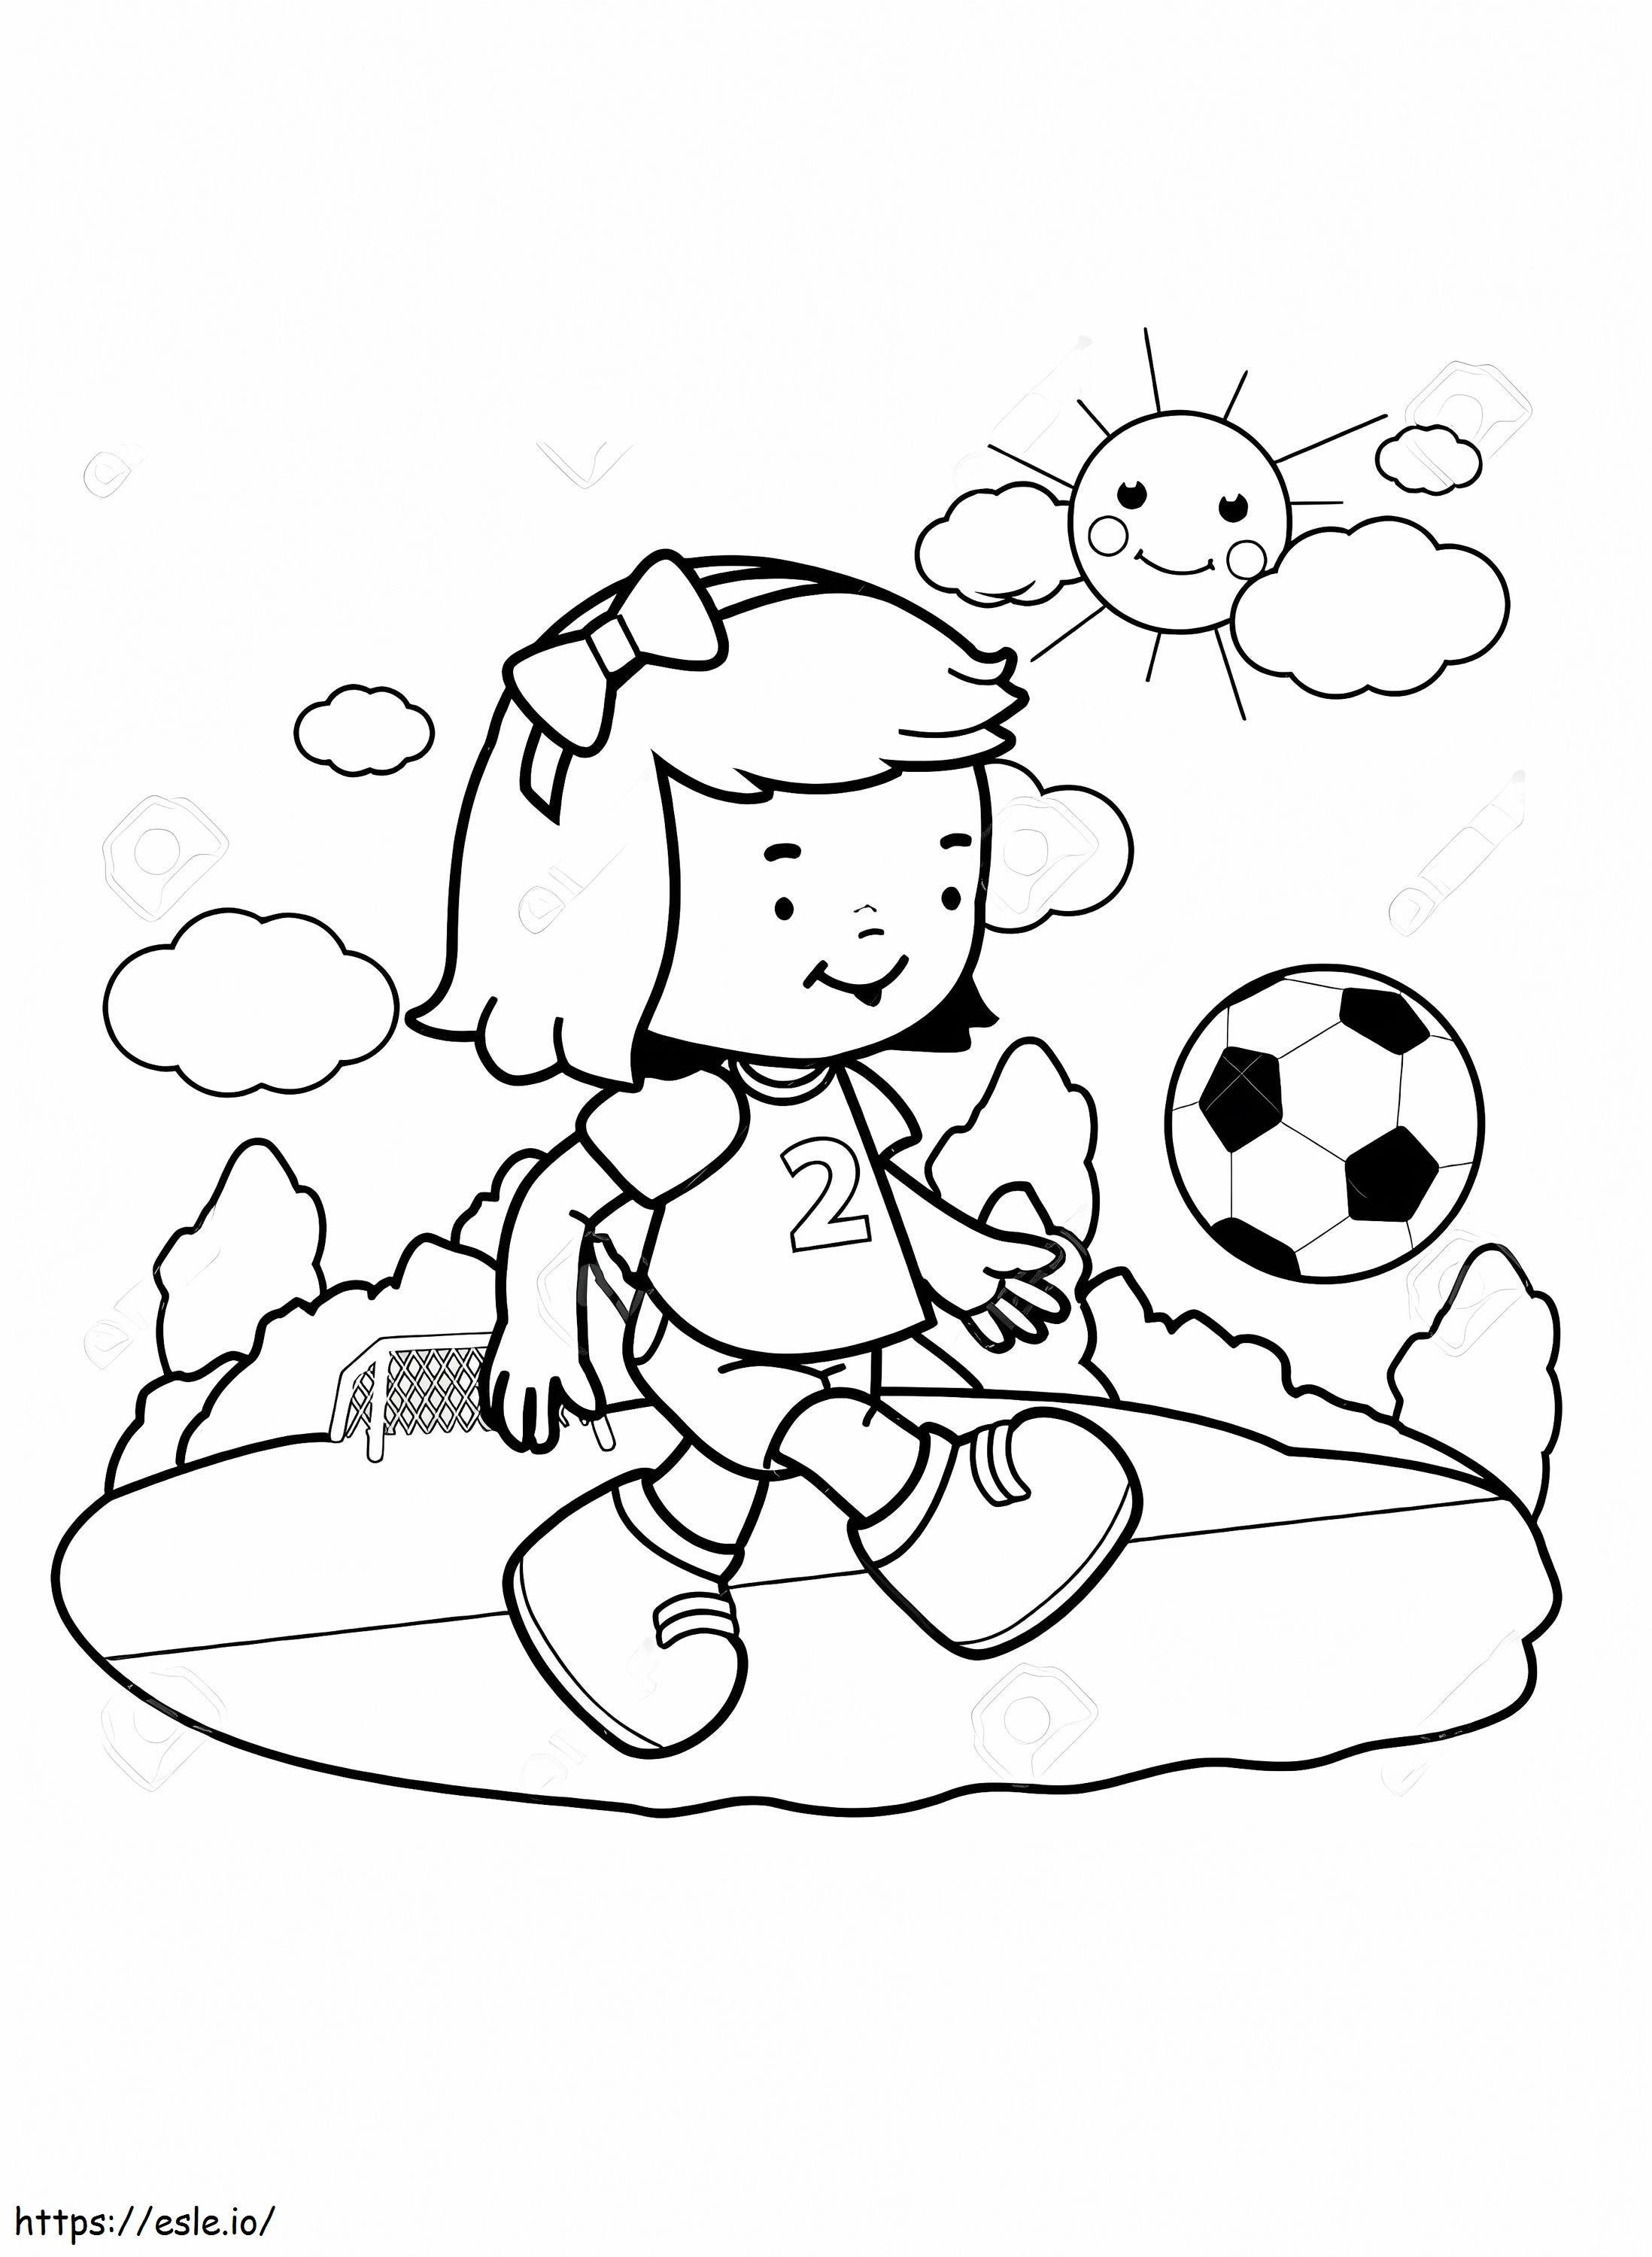 Küçük Kız Futbol Oynuyor boyama